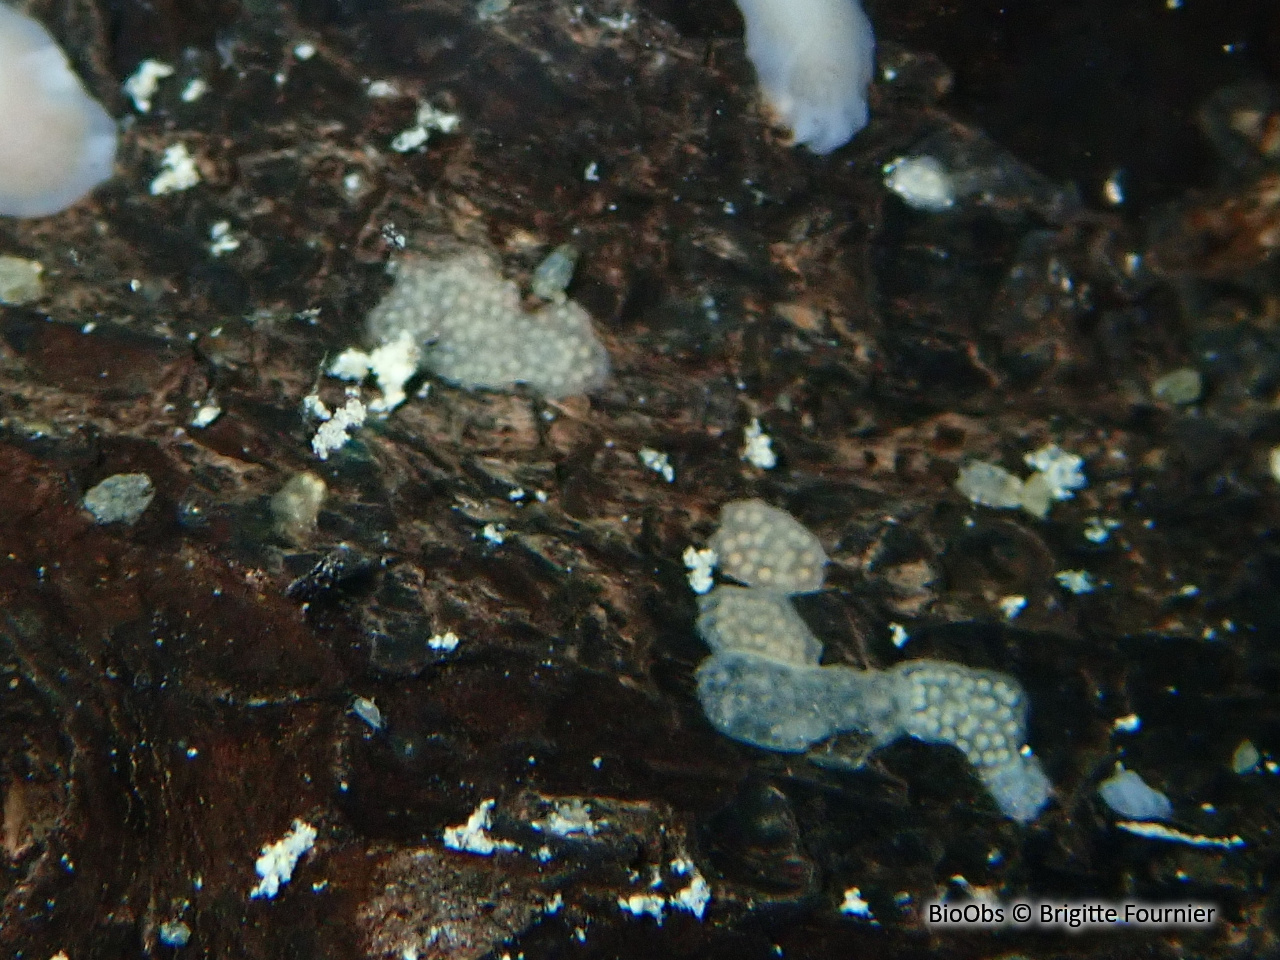 Bryozoaire flottant - Pectinatella magnifica - Brigitte Fournier - BioObs